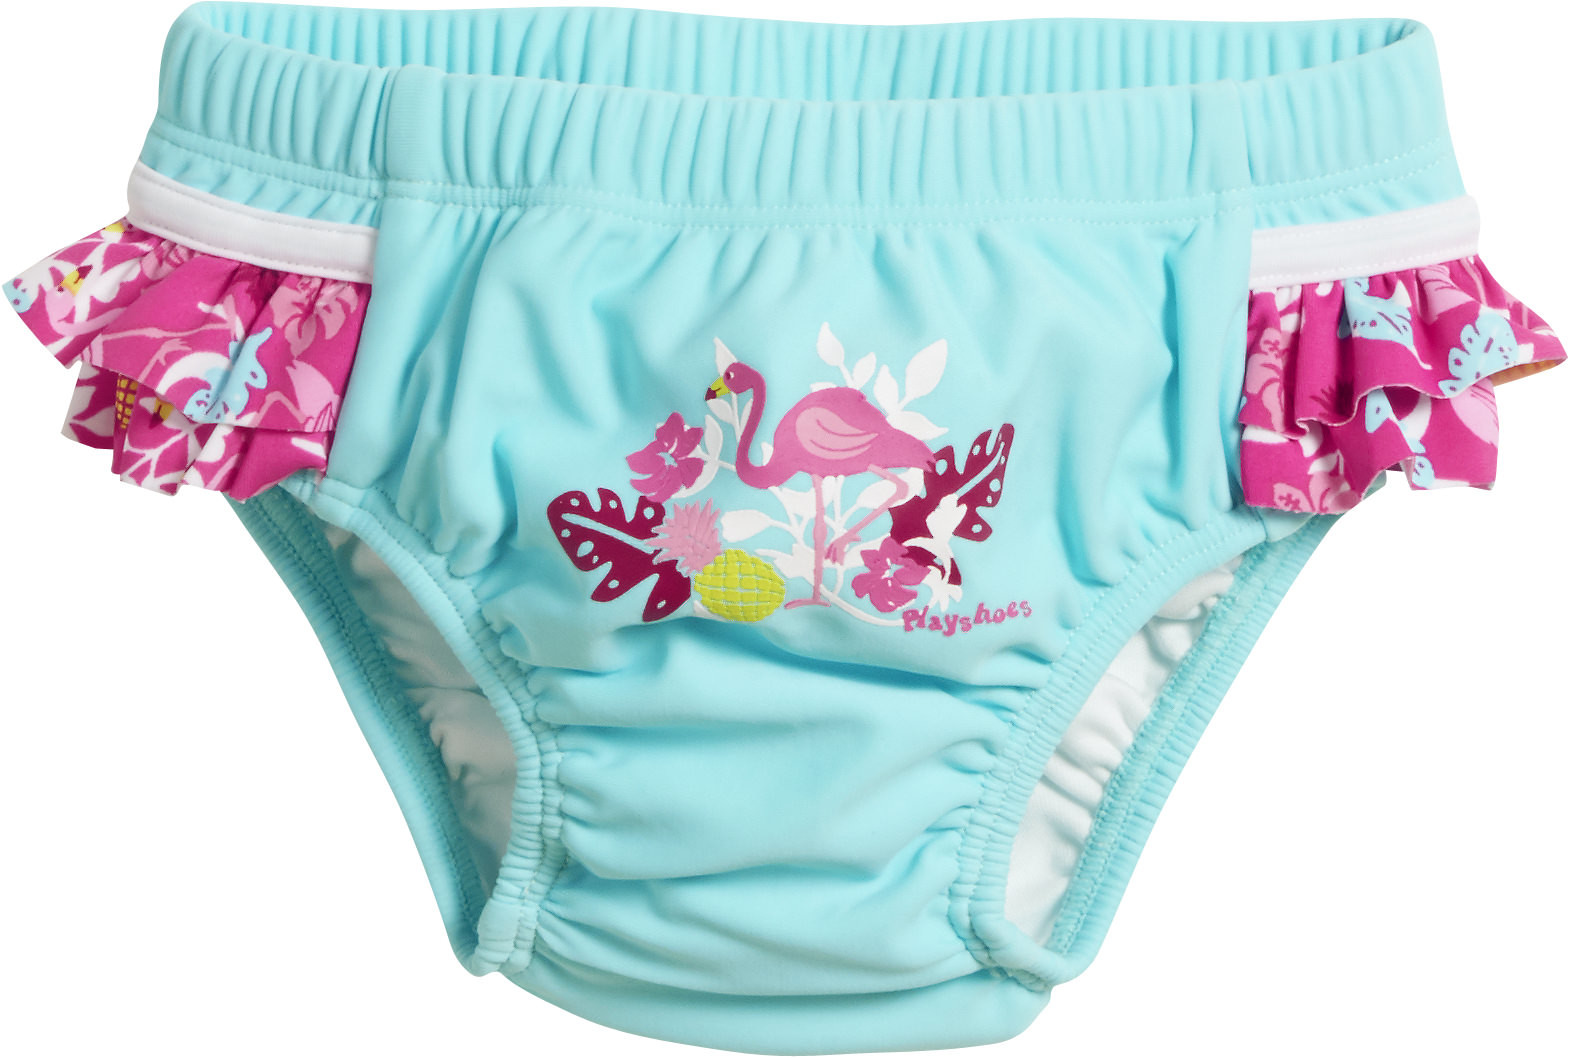 Playshoes - UV swim nappy for girls - Reusable - Flamingo - Aqua/pink